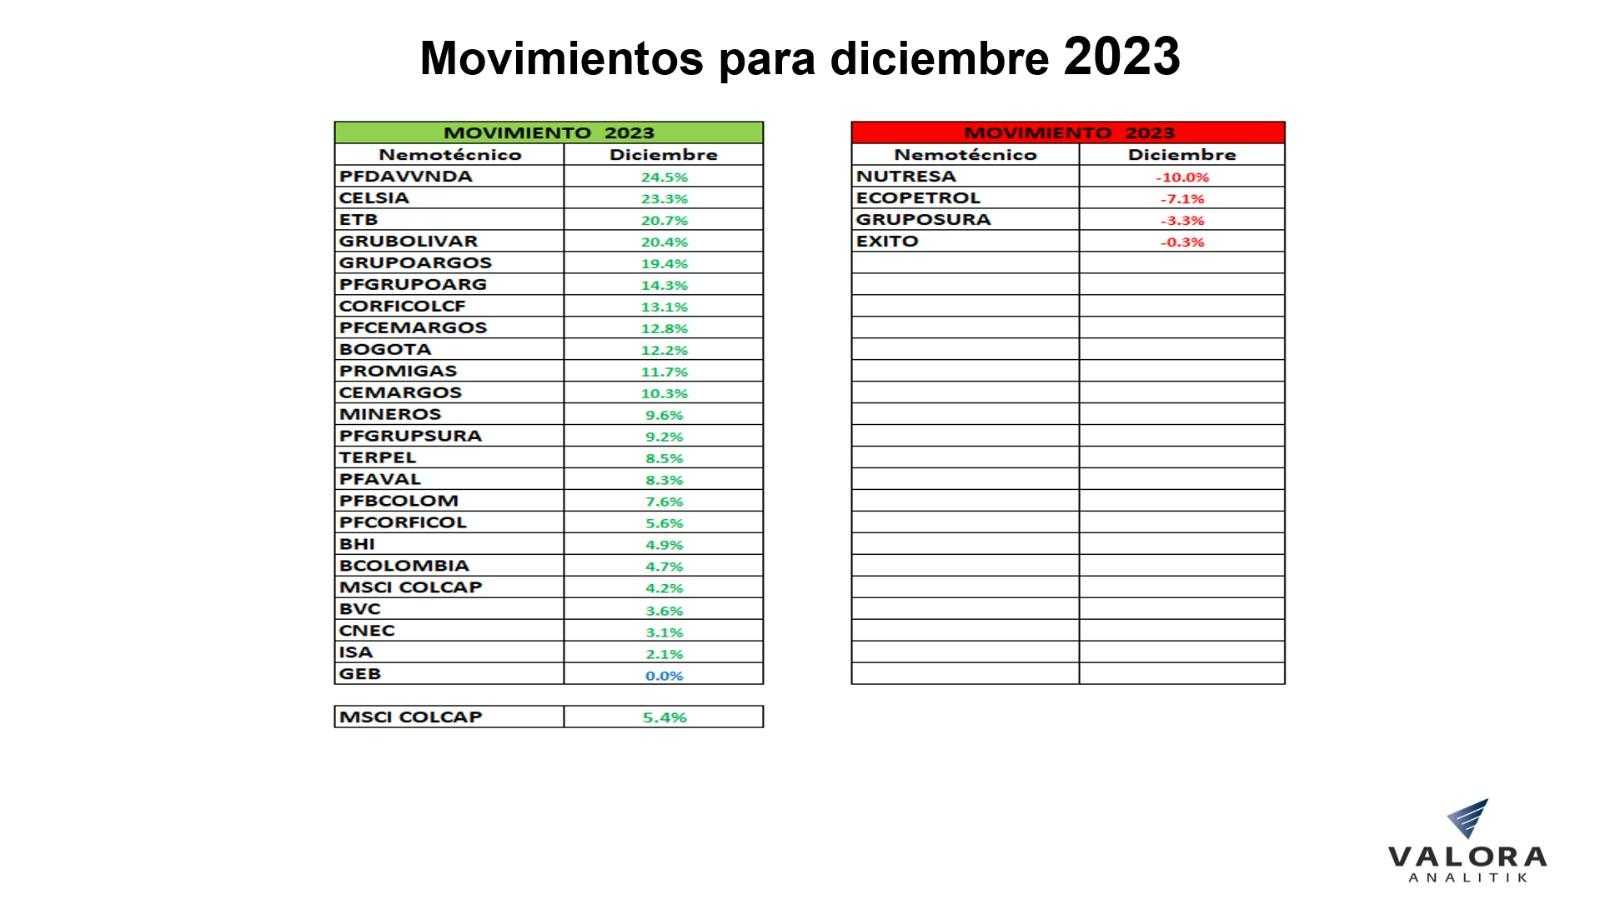 Cierre de acciones e índice MSCI Colcap de la Bolsa de Colombia en diciembre 2023